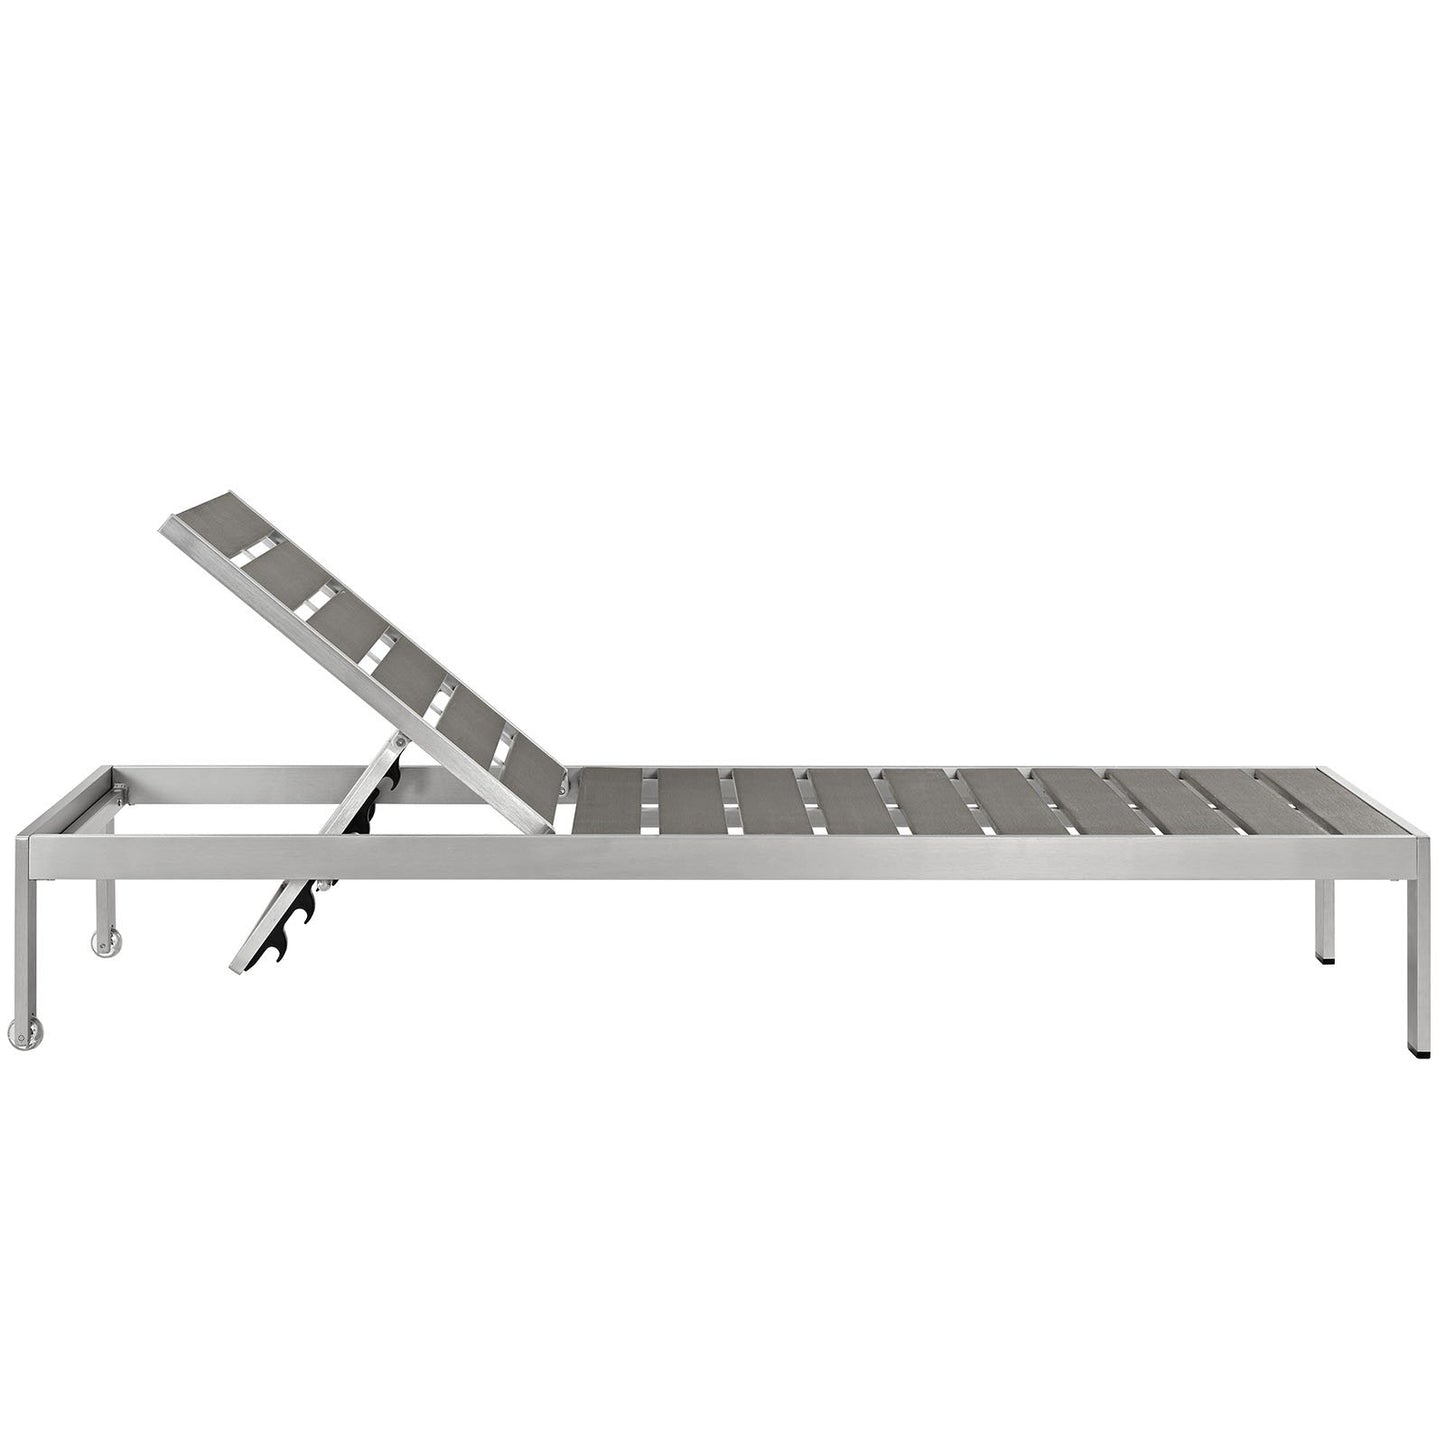 Modway Shore 6-Piece Aluminum Chaise Lounge Set, Silver/Gray